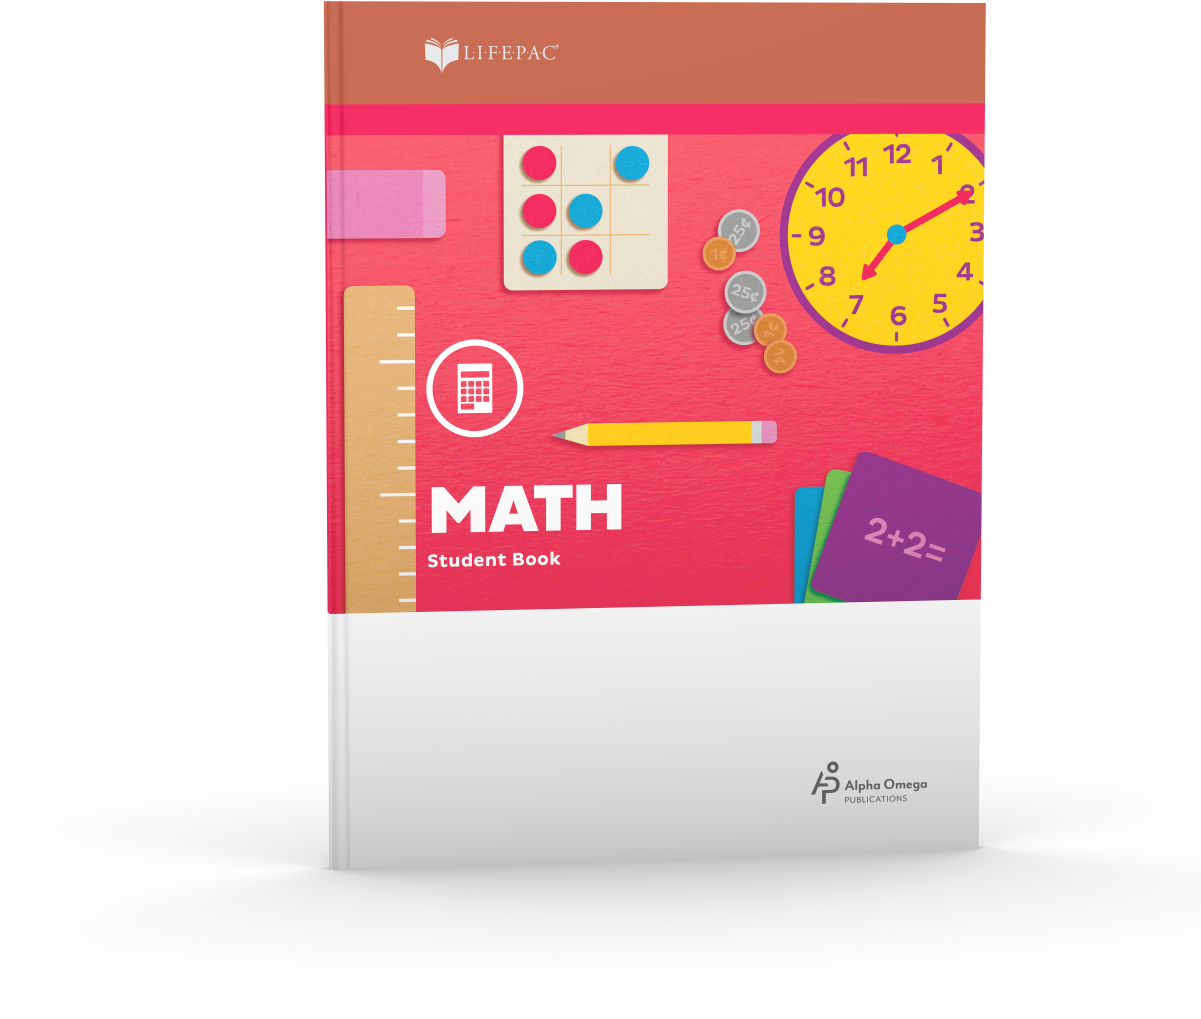 Lifepac® Kindergarten Math Student Book - Lifepac Math (1200x1200)